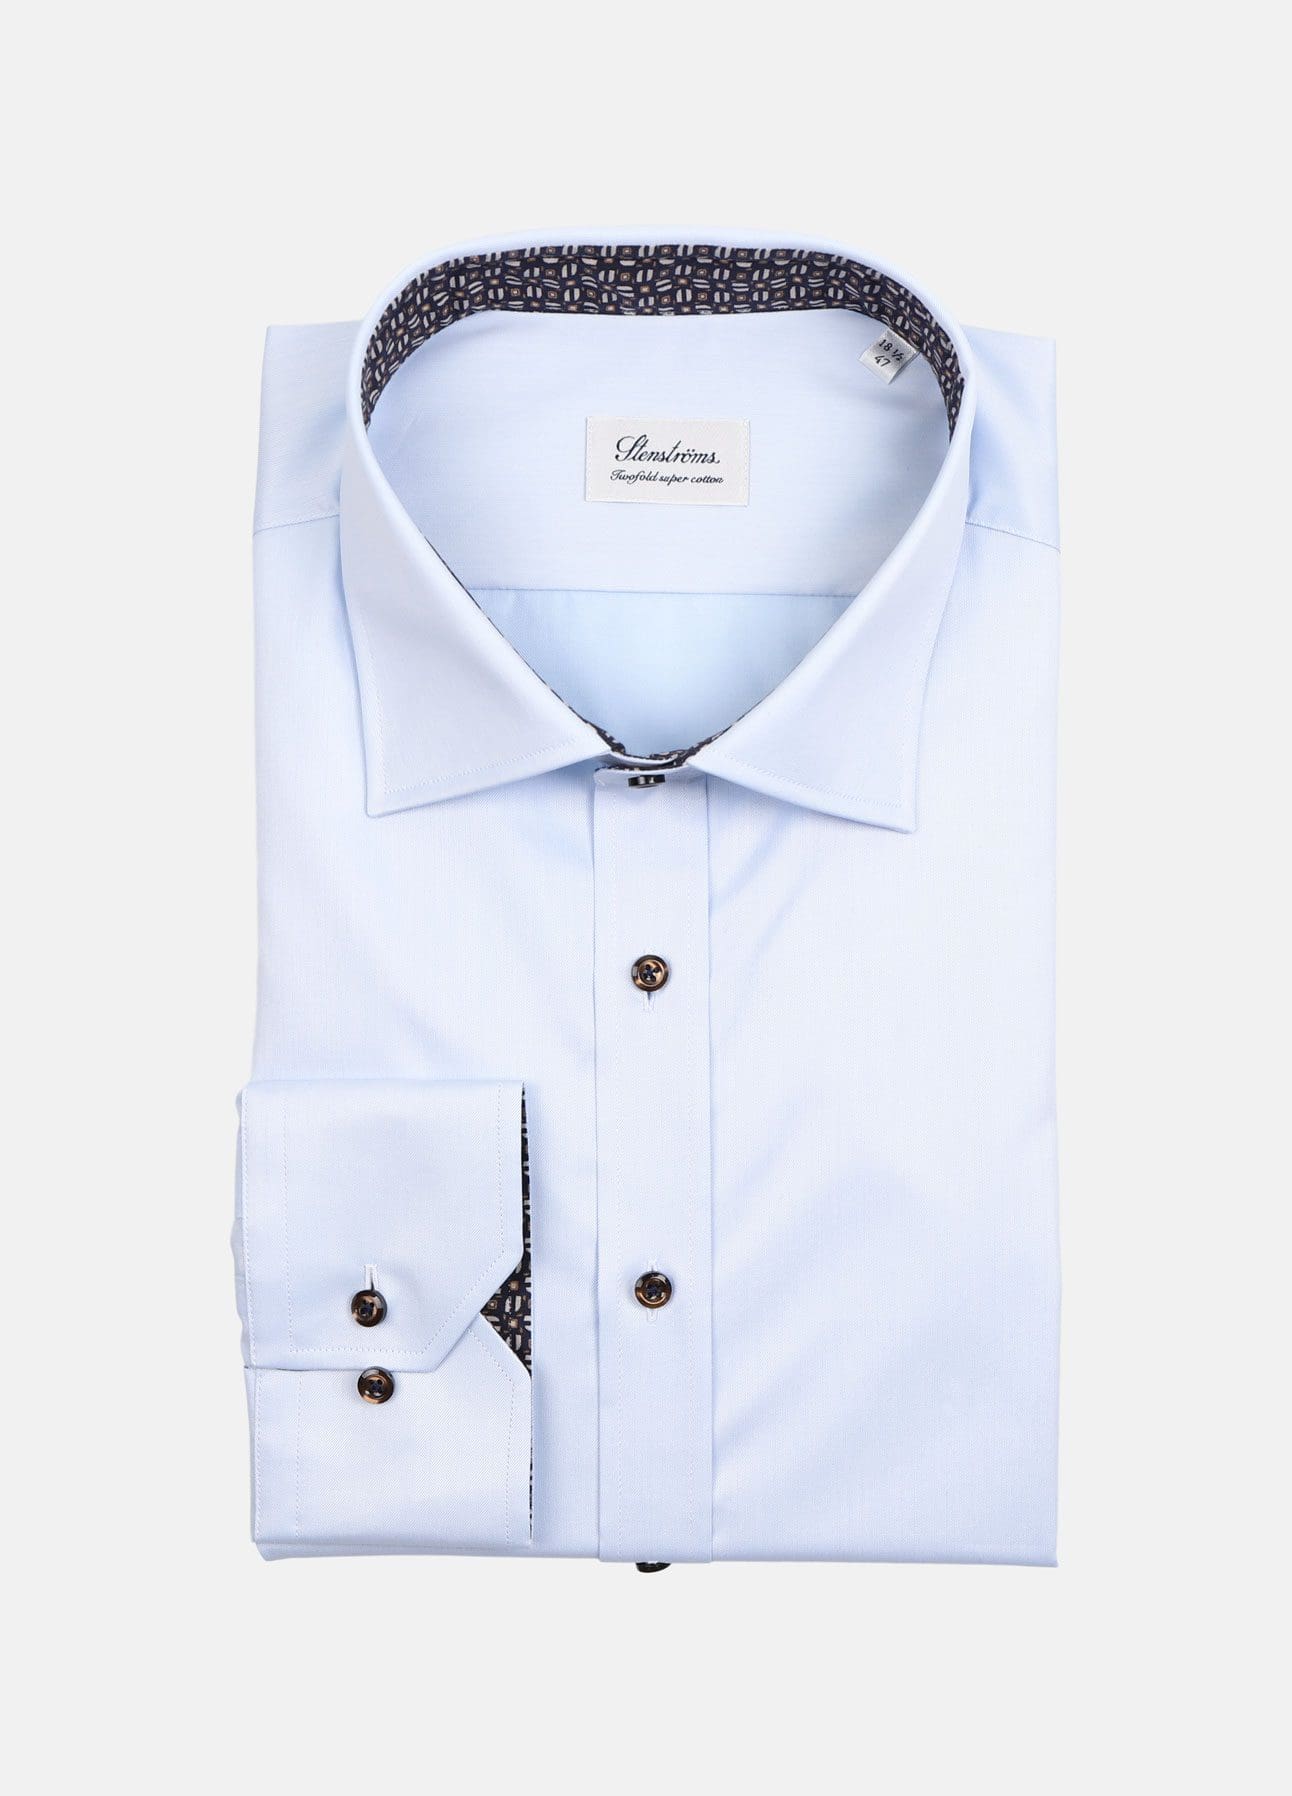 Business skjorter skjorter 3XL+ | Online